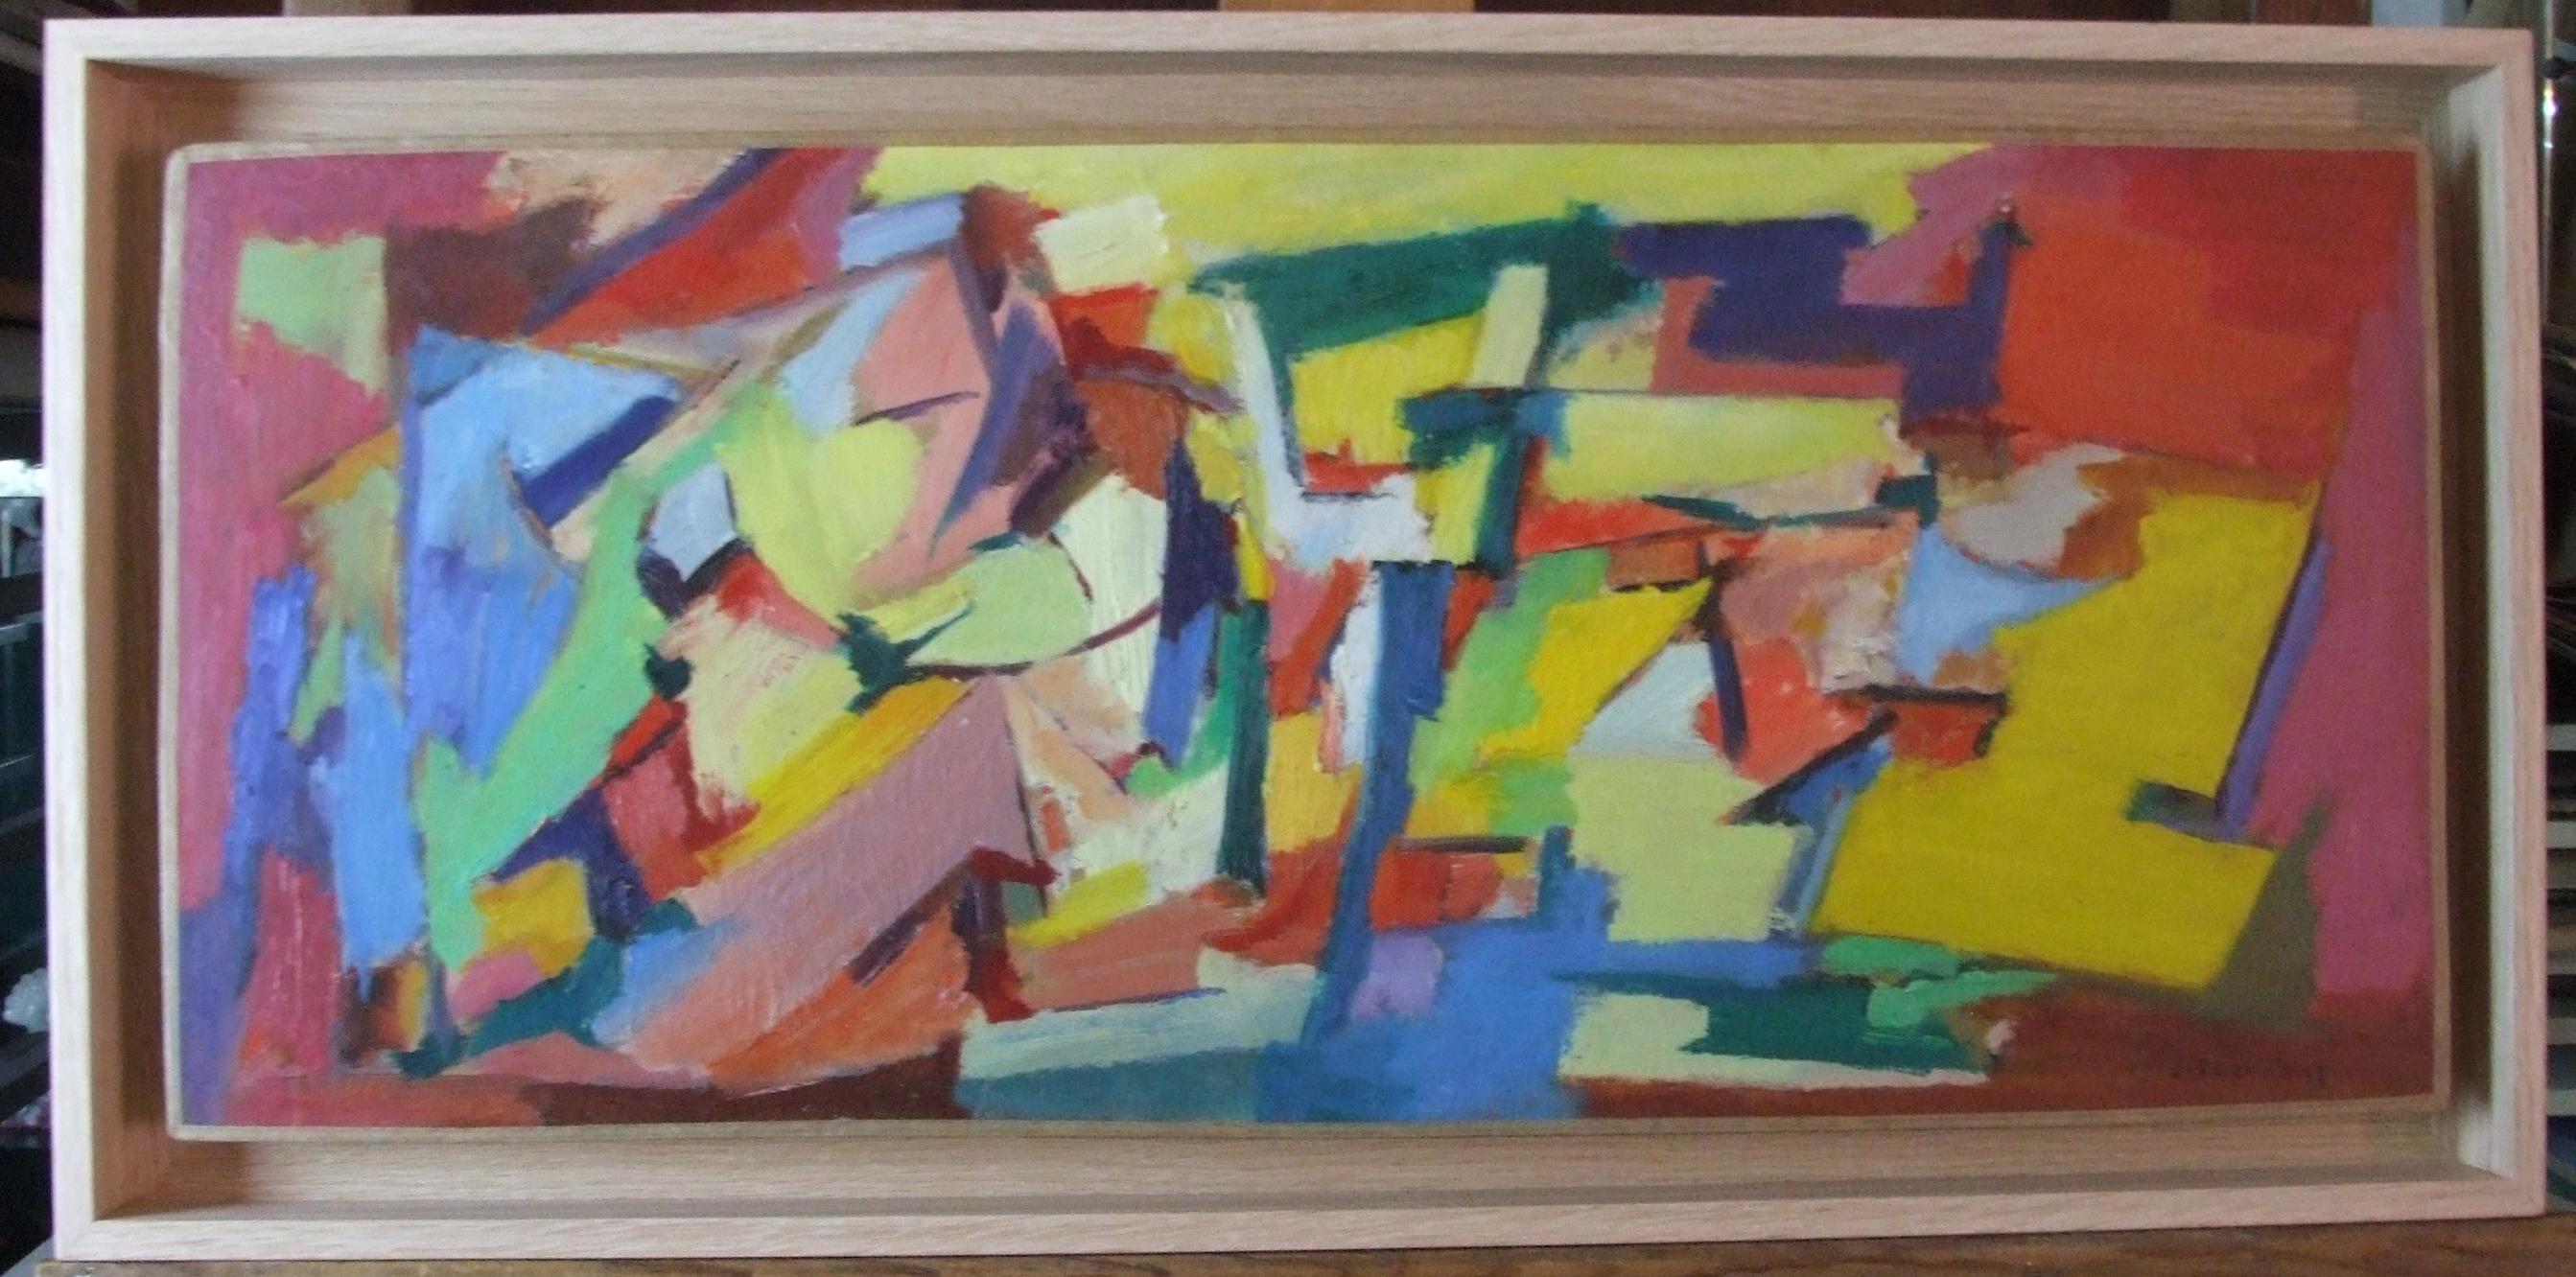 Jean Deyrolle Abstract Painting – composition I, 1963 - Öl auf Leinwand, 25x59 cm, gerahmt.